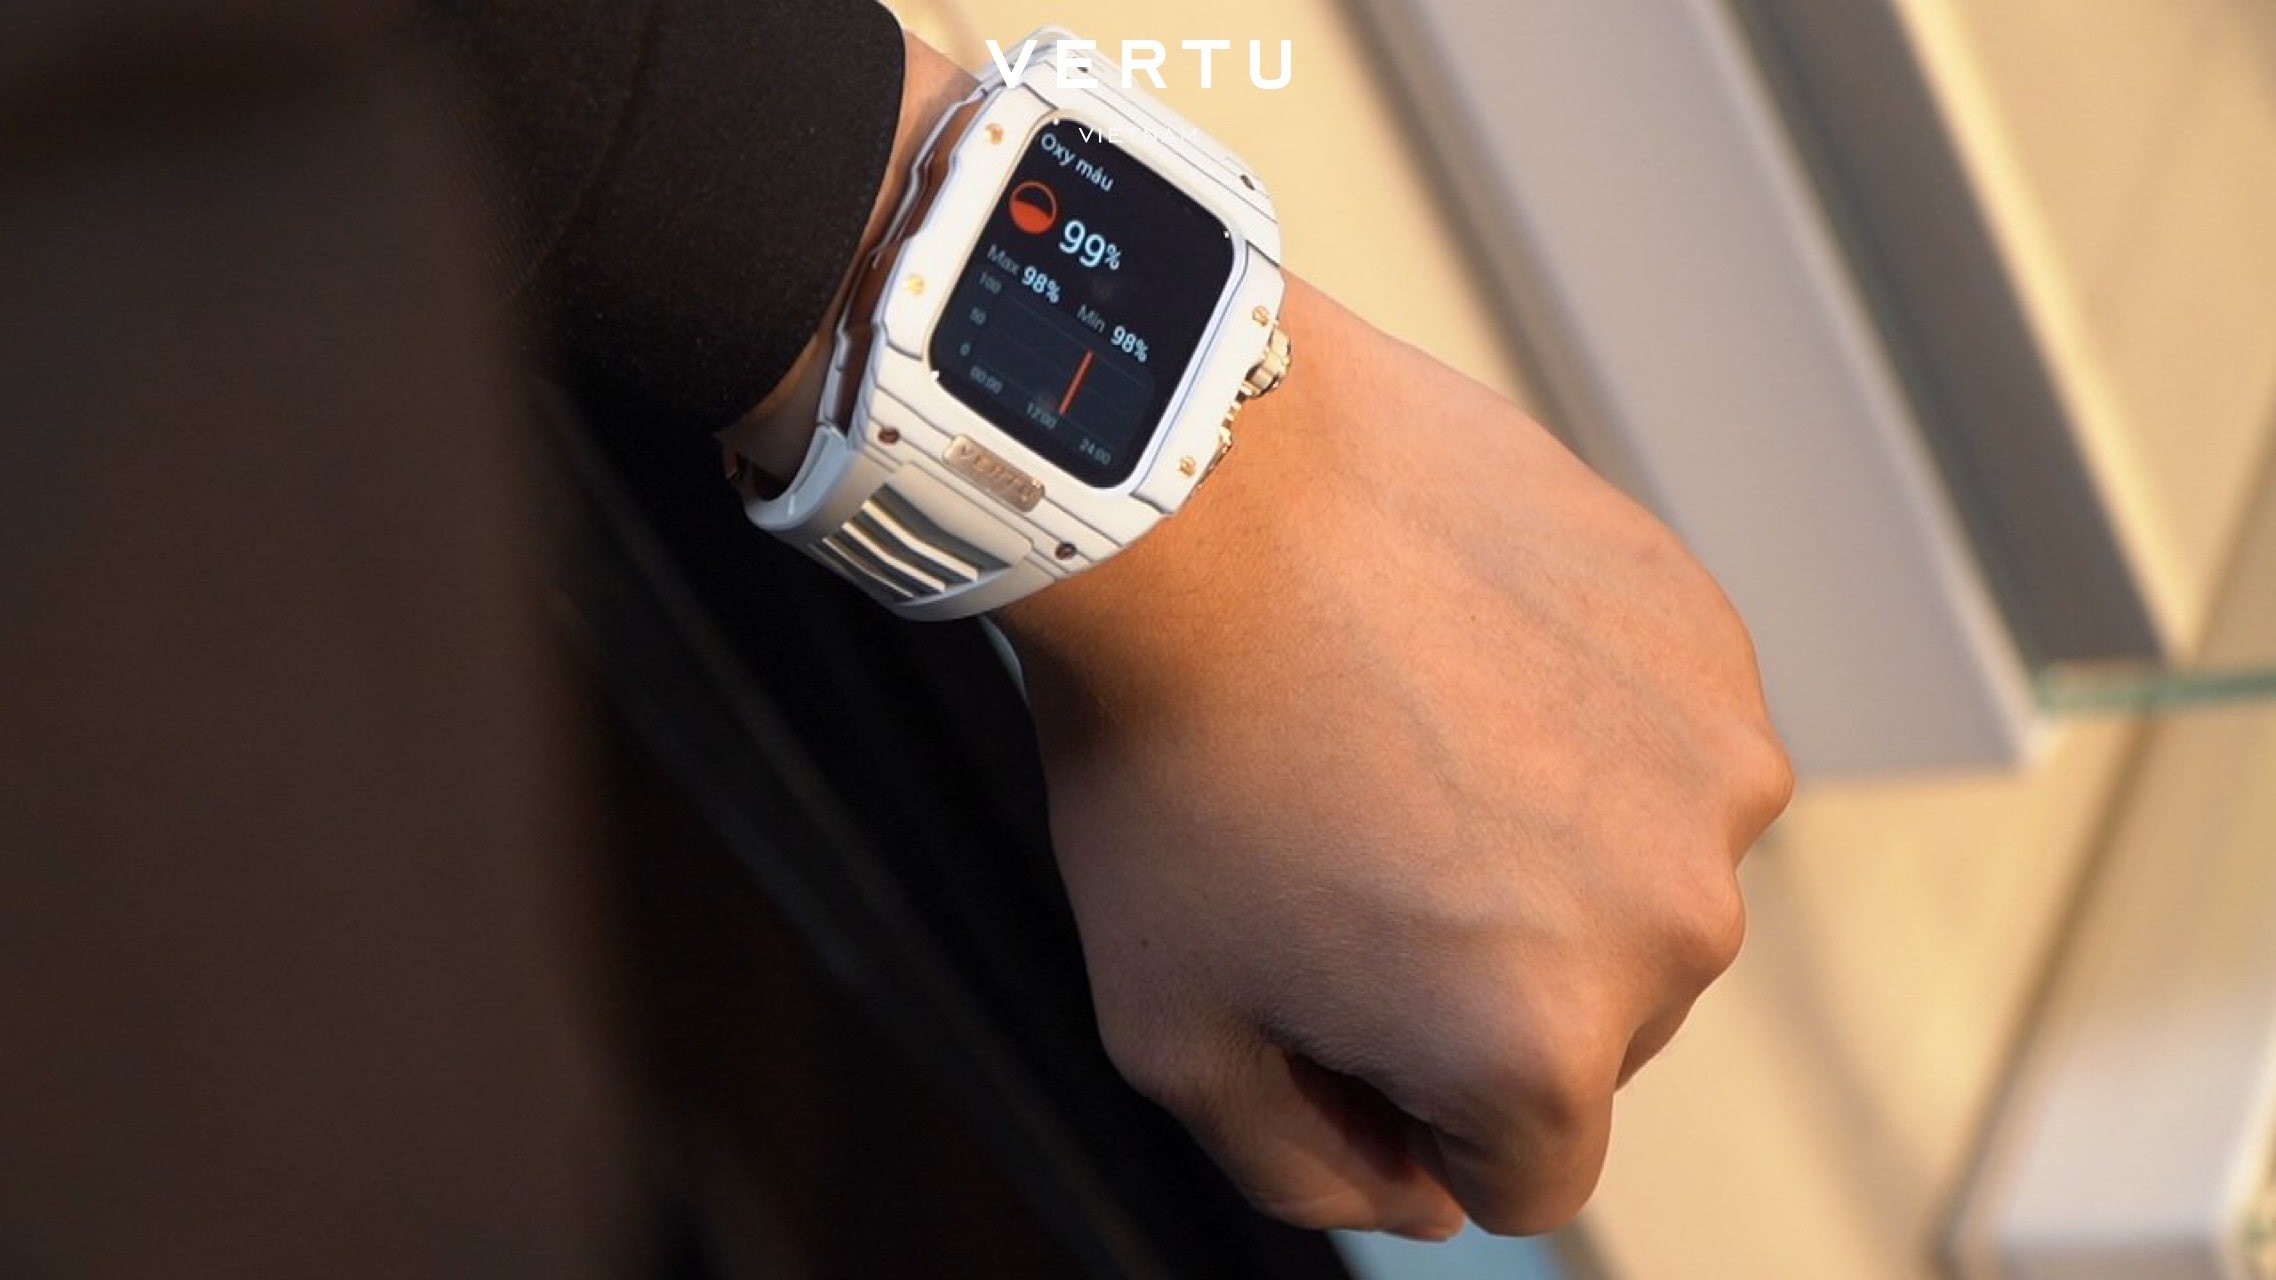 vertu-watch-min-1711519484.jpg